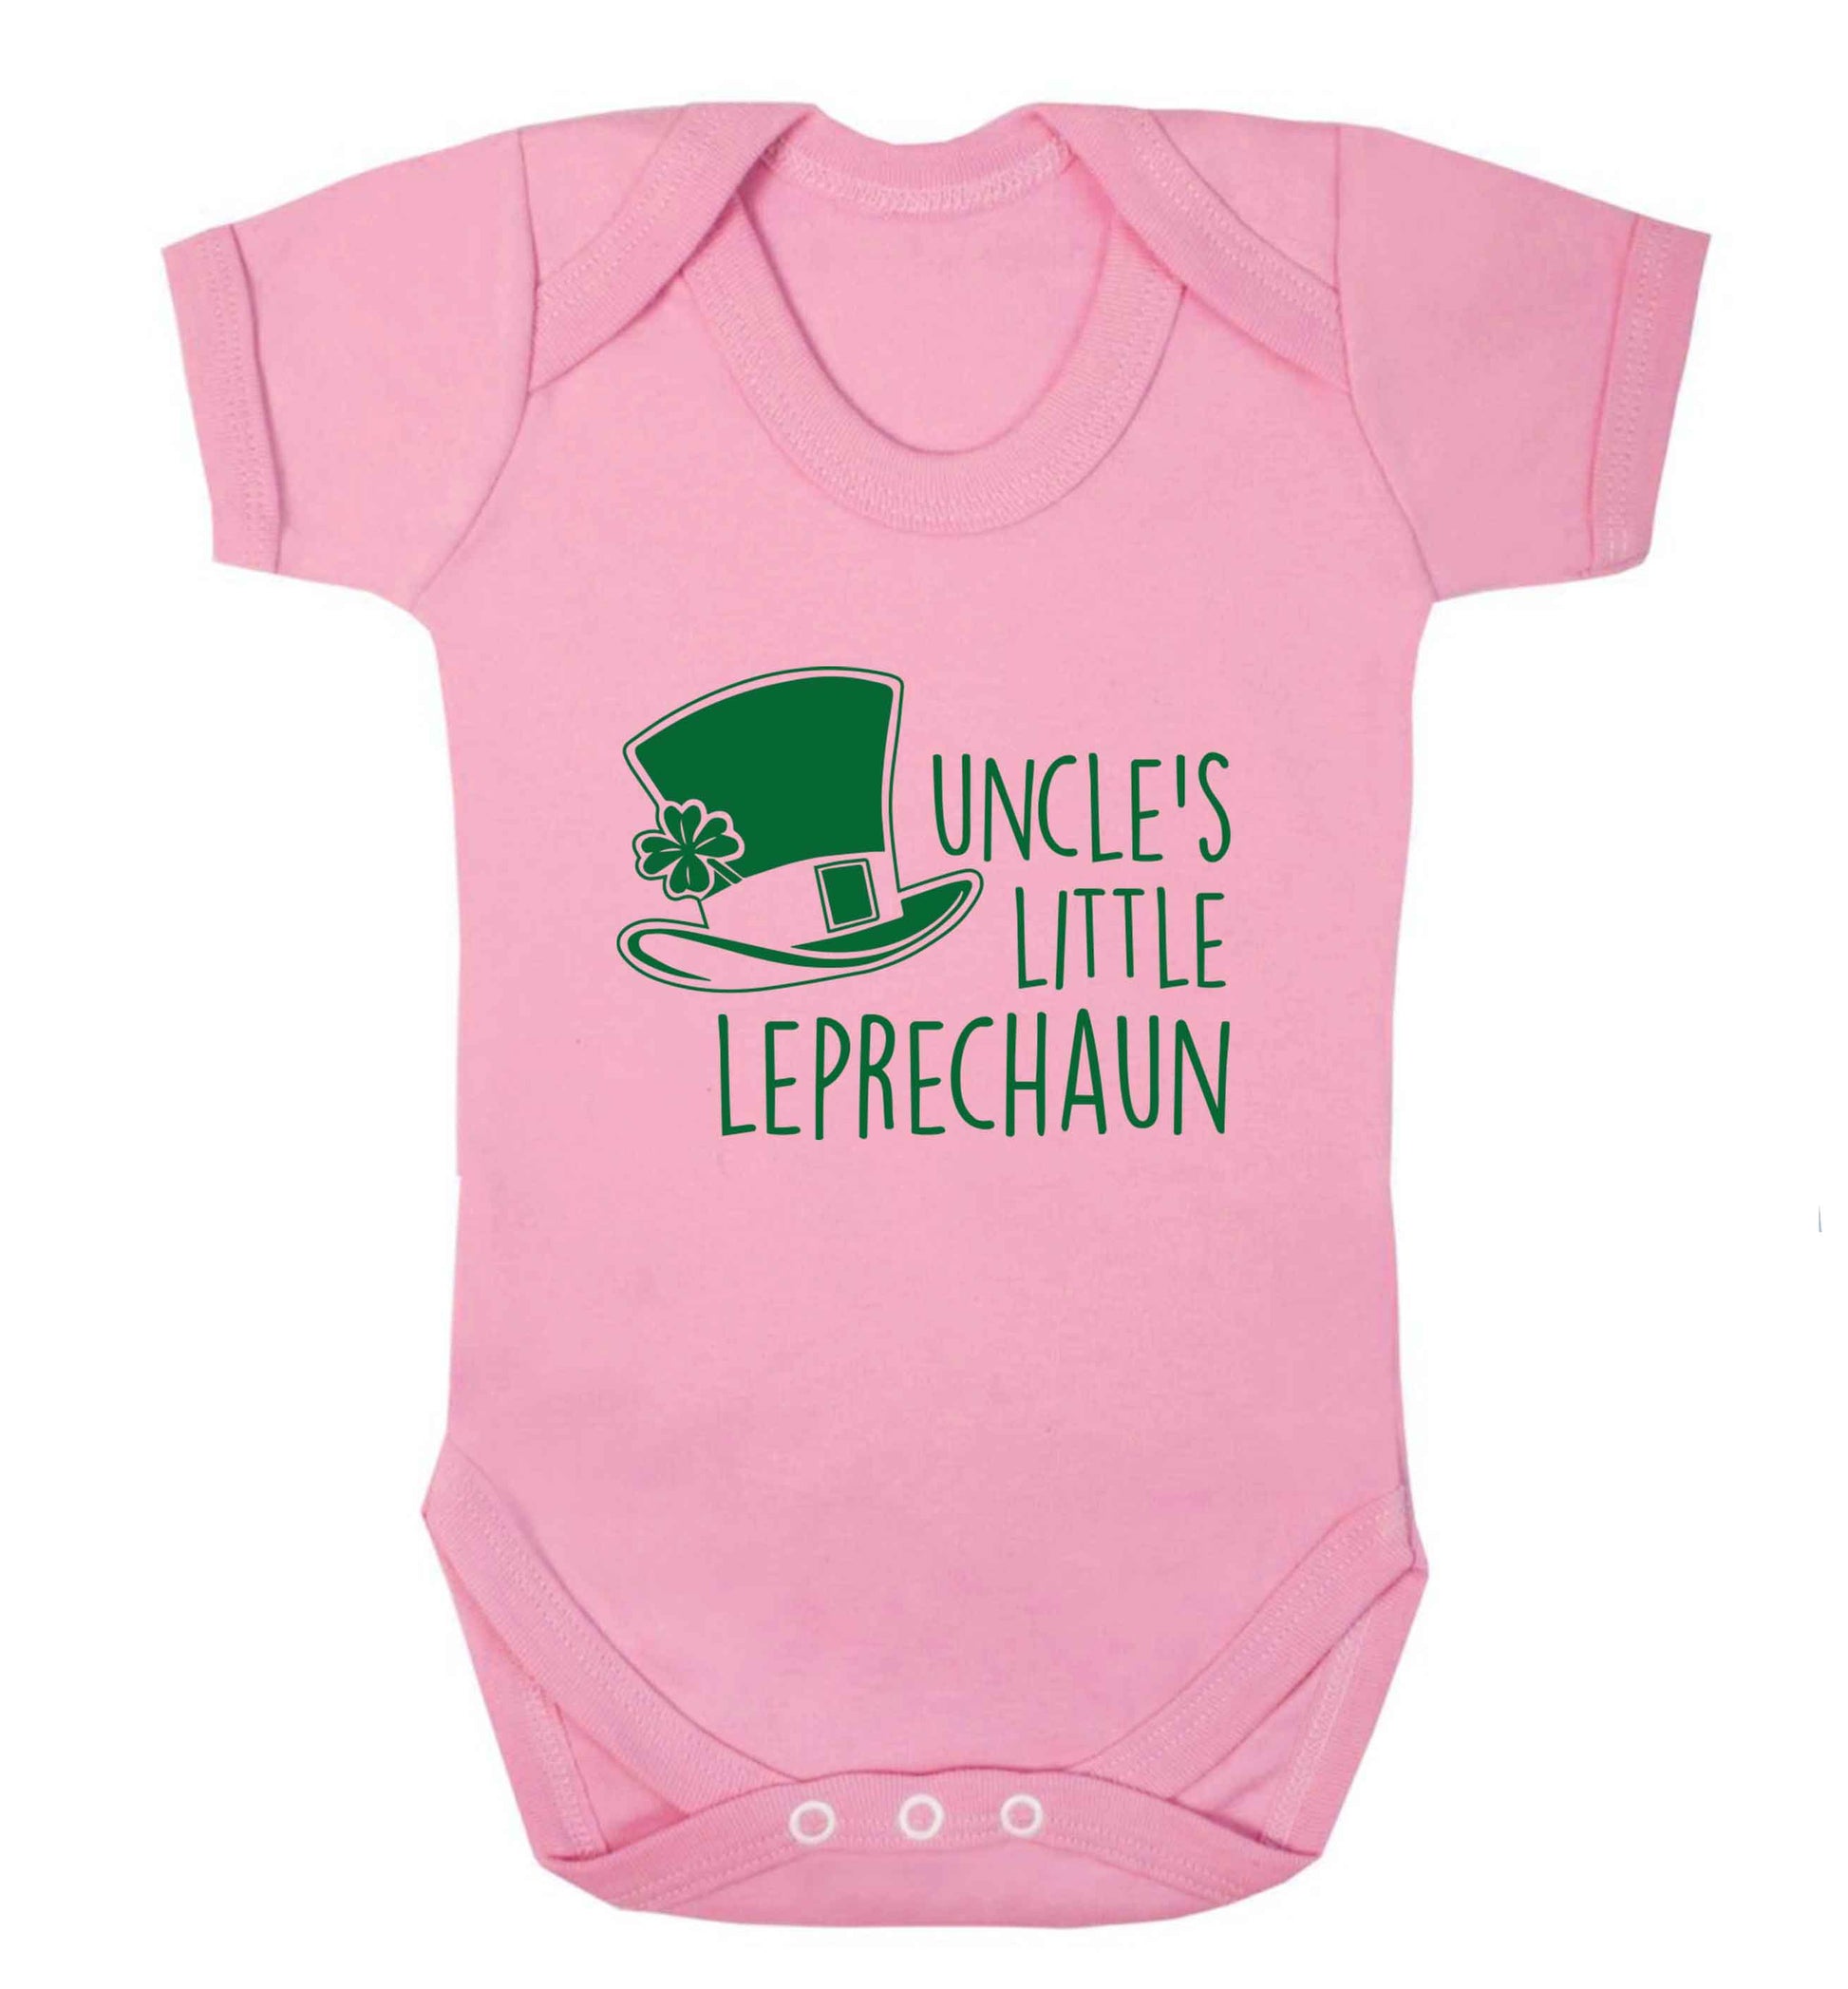 Uncles little leprechaun baby vest pale pink 18-24 months